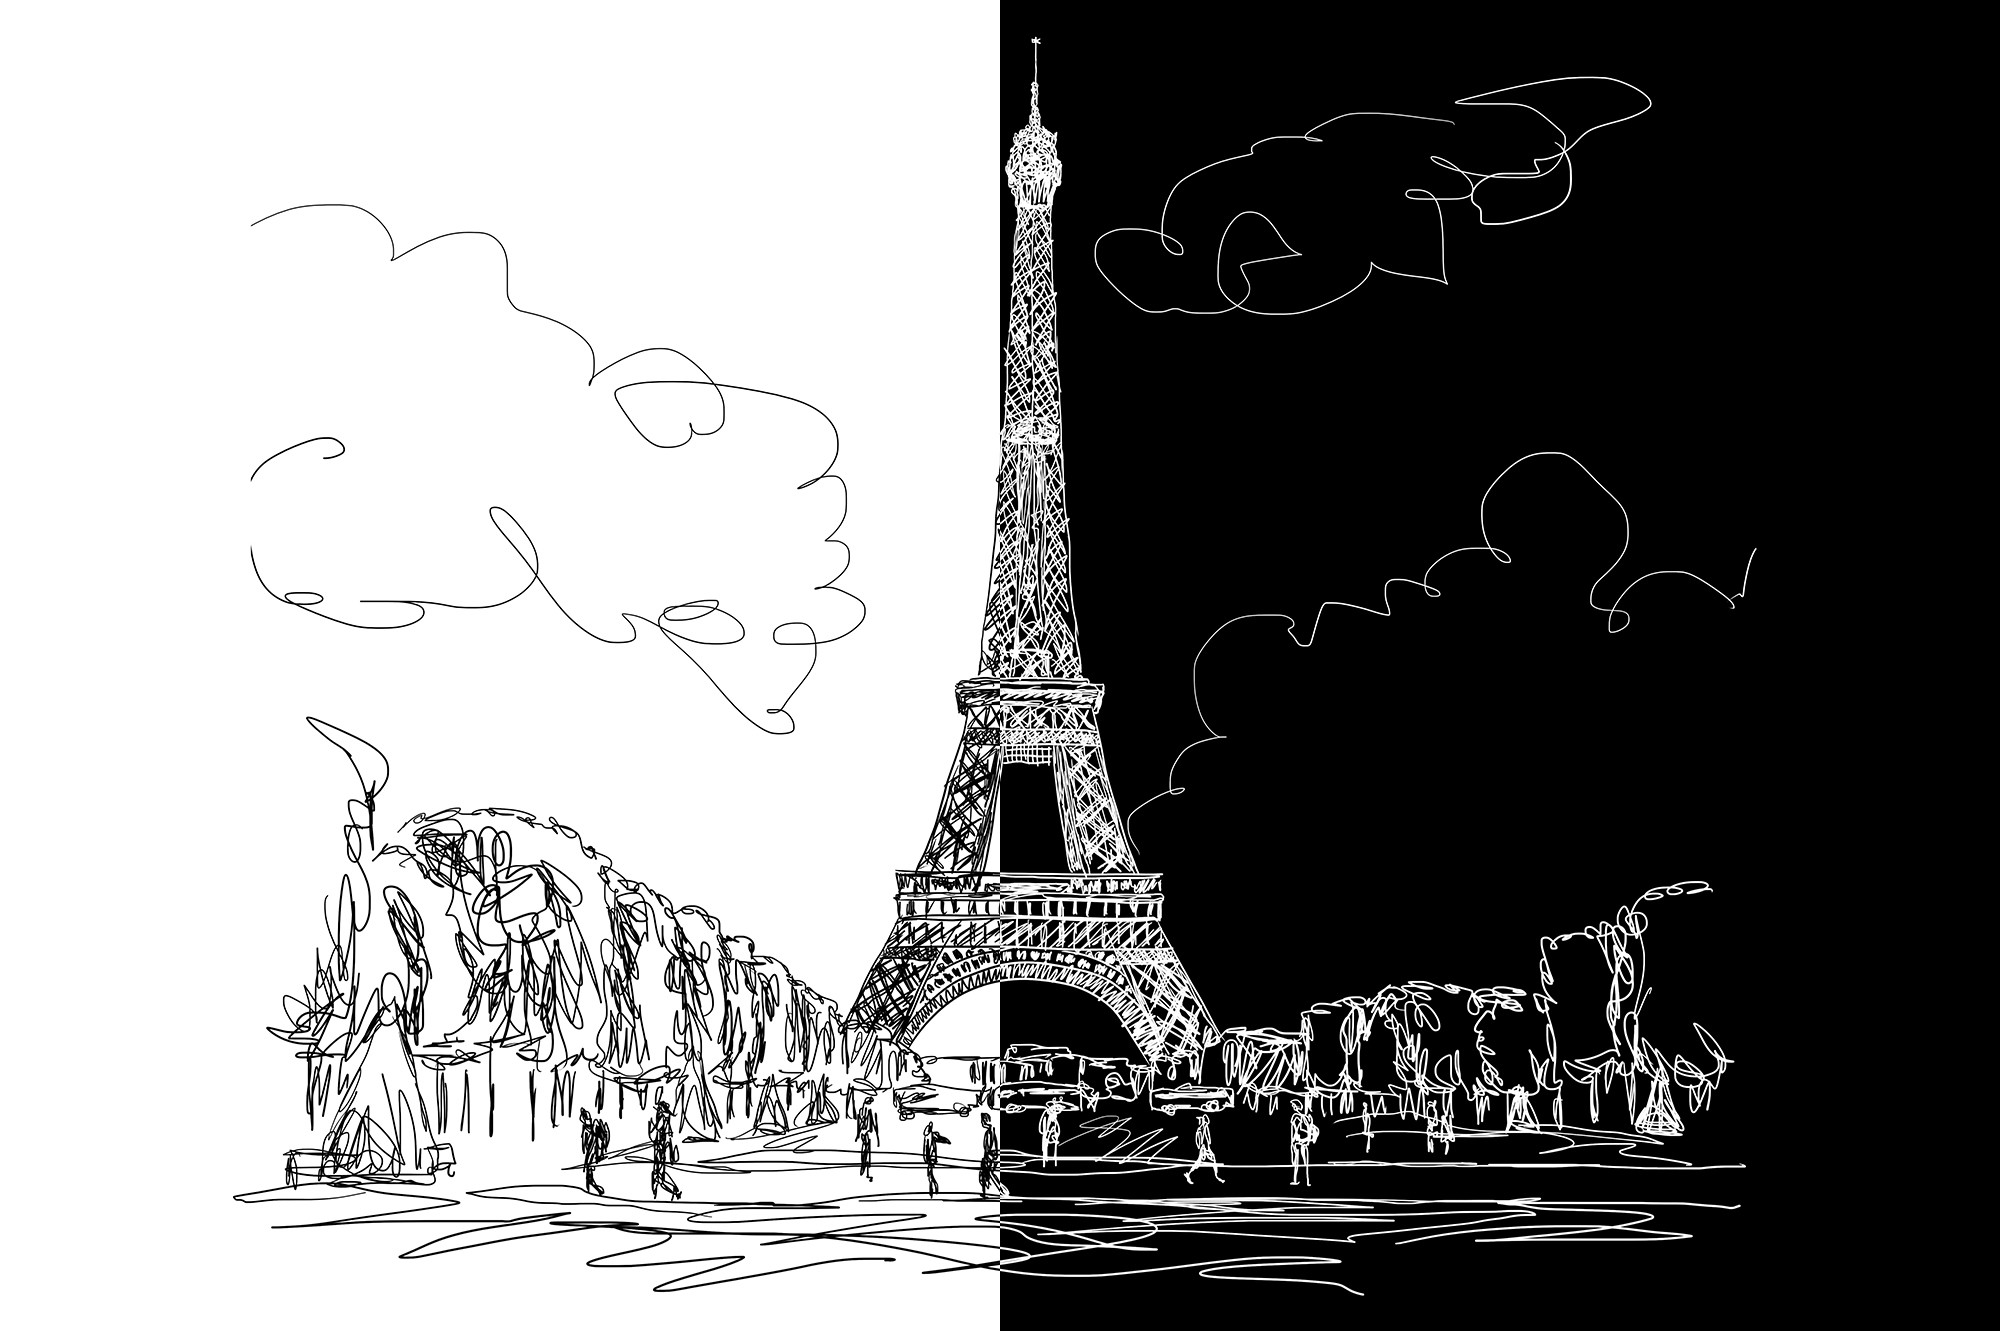 eiffel tower sketch 3d